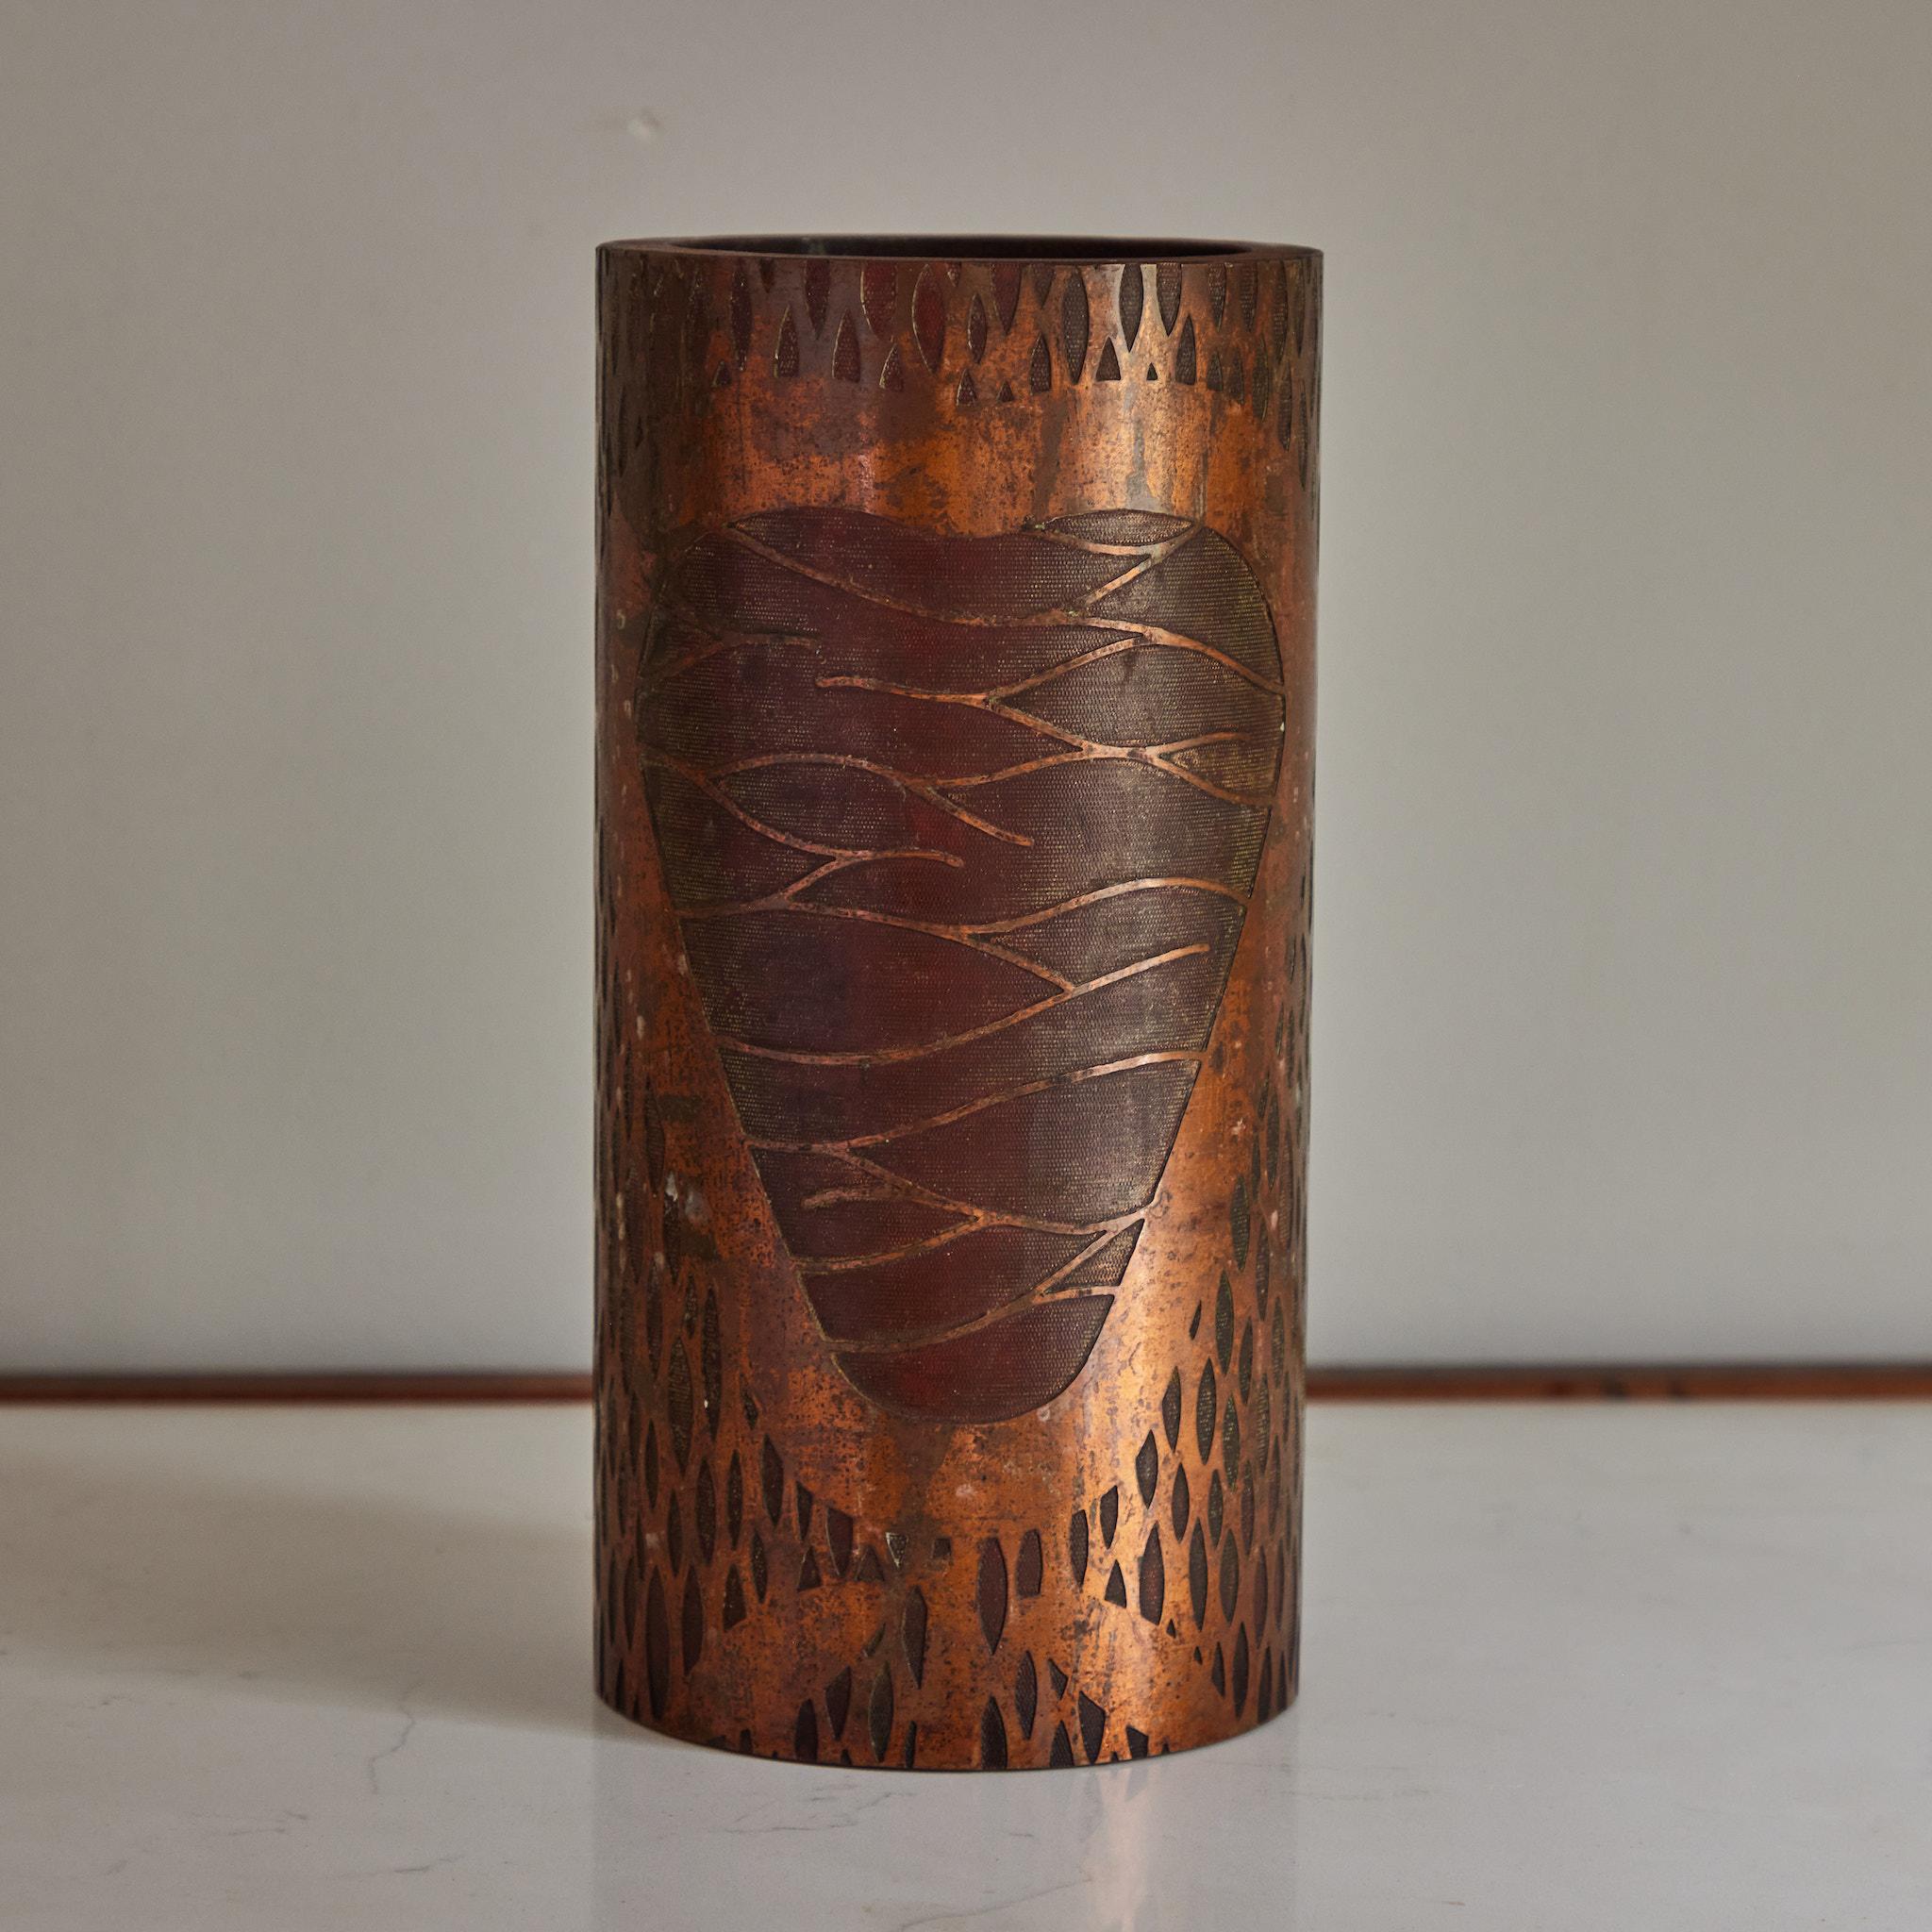 Eine indonesische Batikdruckwalze aus Eisen und Kupfer, die um die Jahrhundertwende von den Franzosen erworben und seitdem zu einer Vase umgestaltet wurde. Die Oberfläche des Stücks weist ein abstraktes dekoratives Motiv aus organischen Formen und